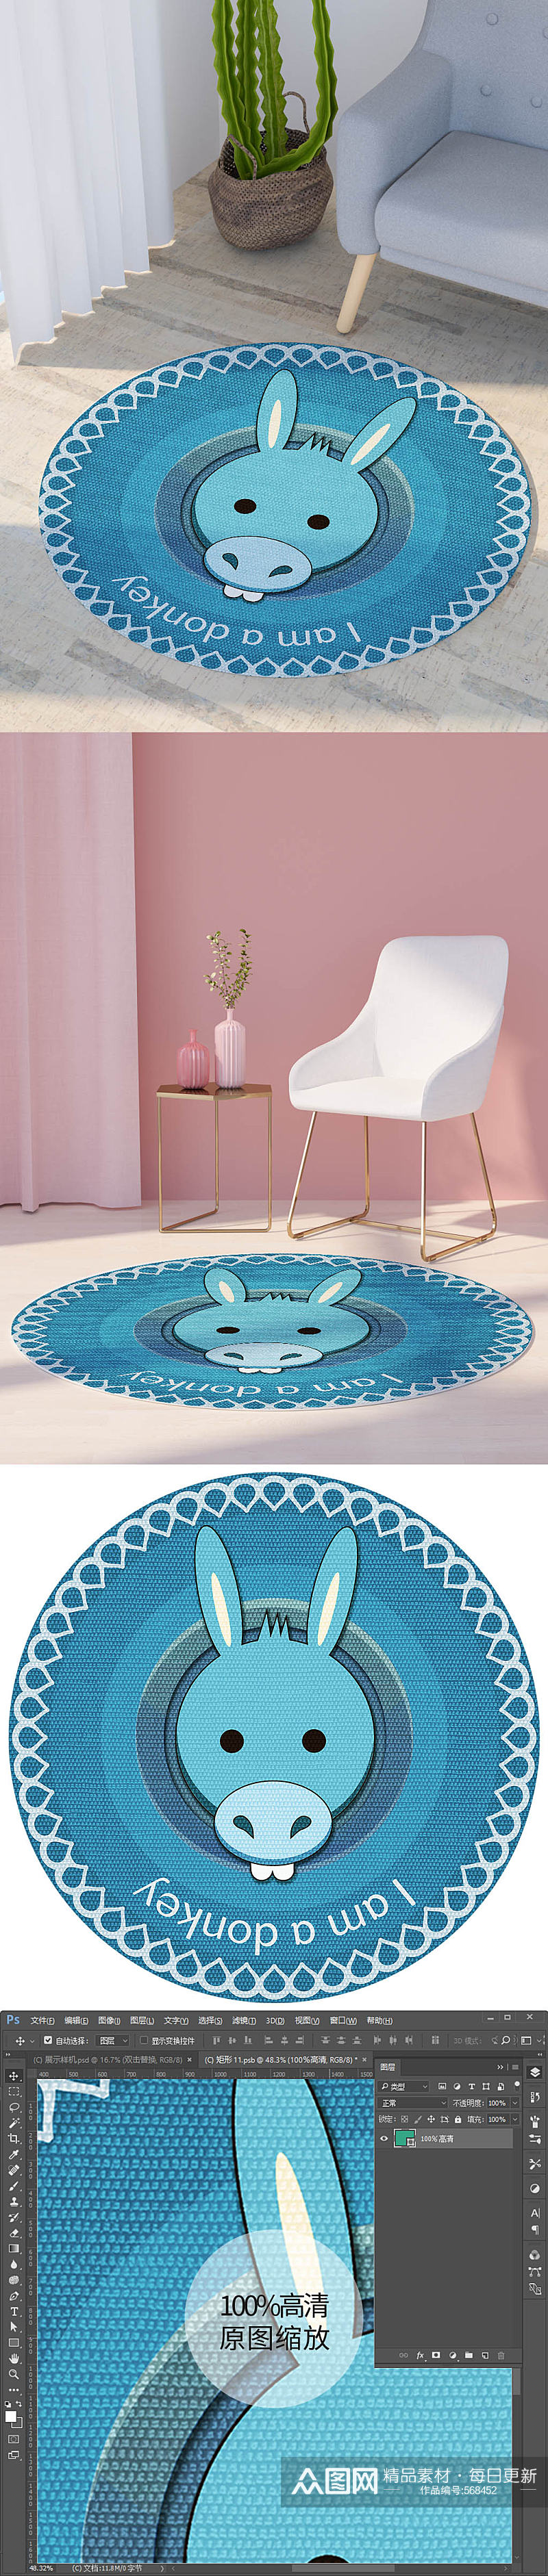 卡通蓝色小毛驴字母花纹圆形地毯印花图案素材